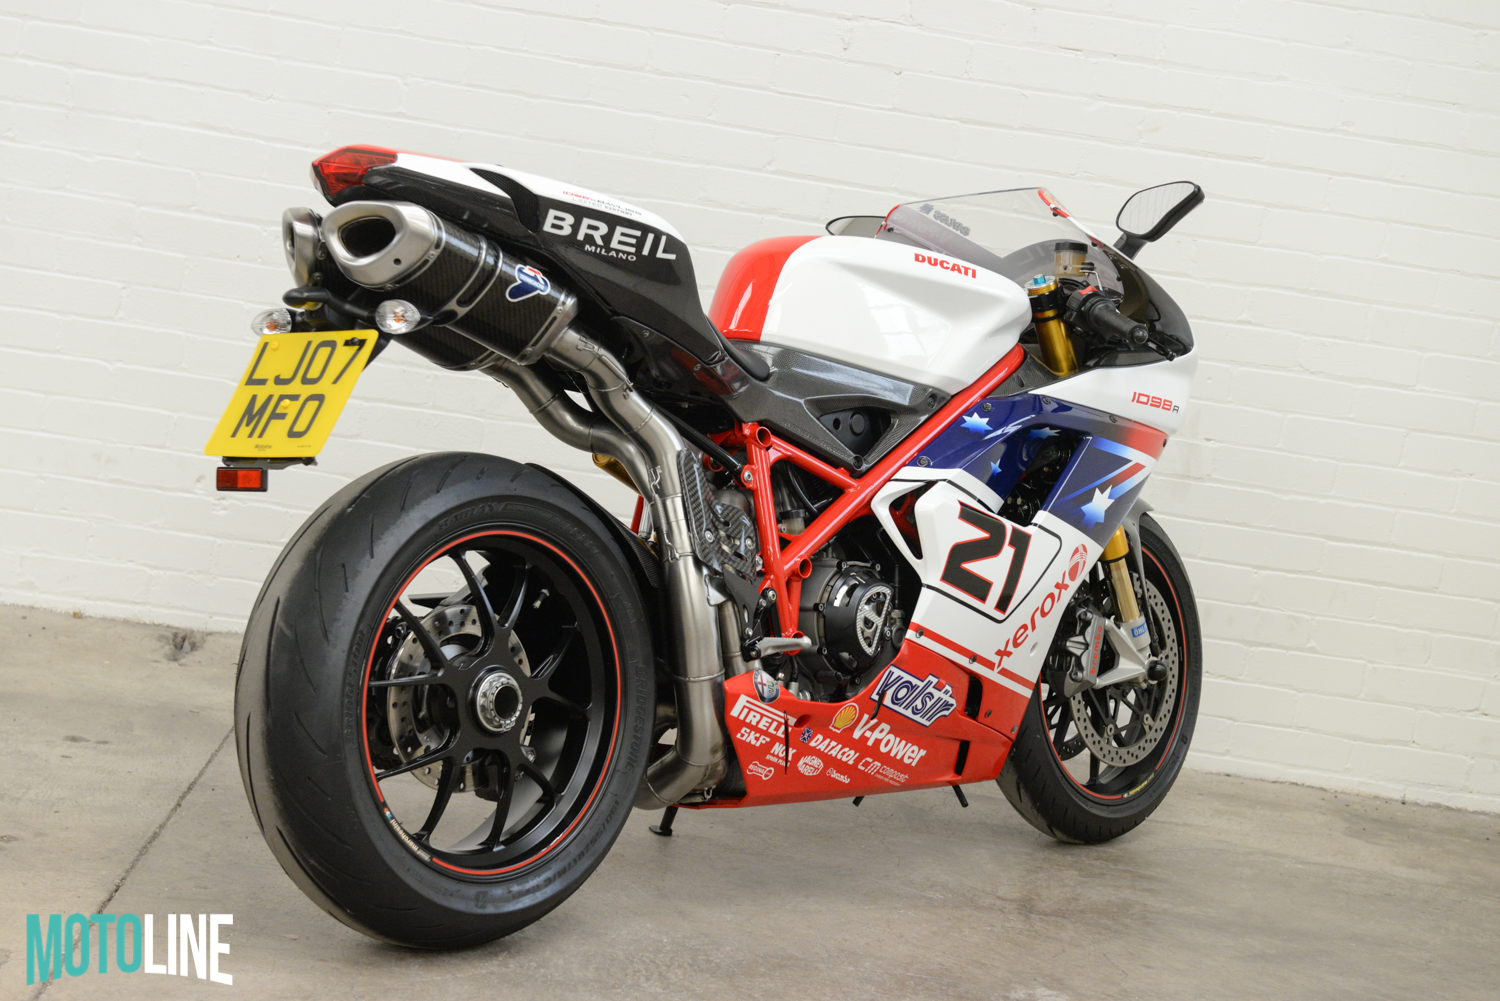 2007 Ducati 1098 S Troy Bayliss “21” Replica